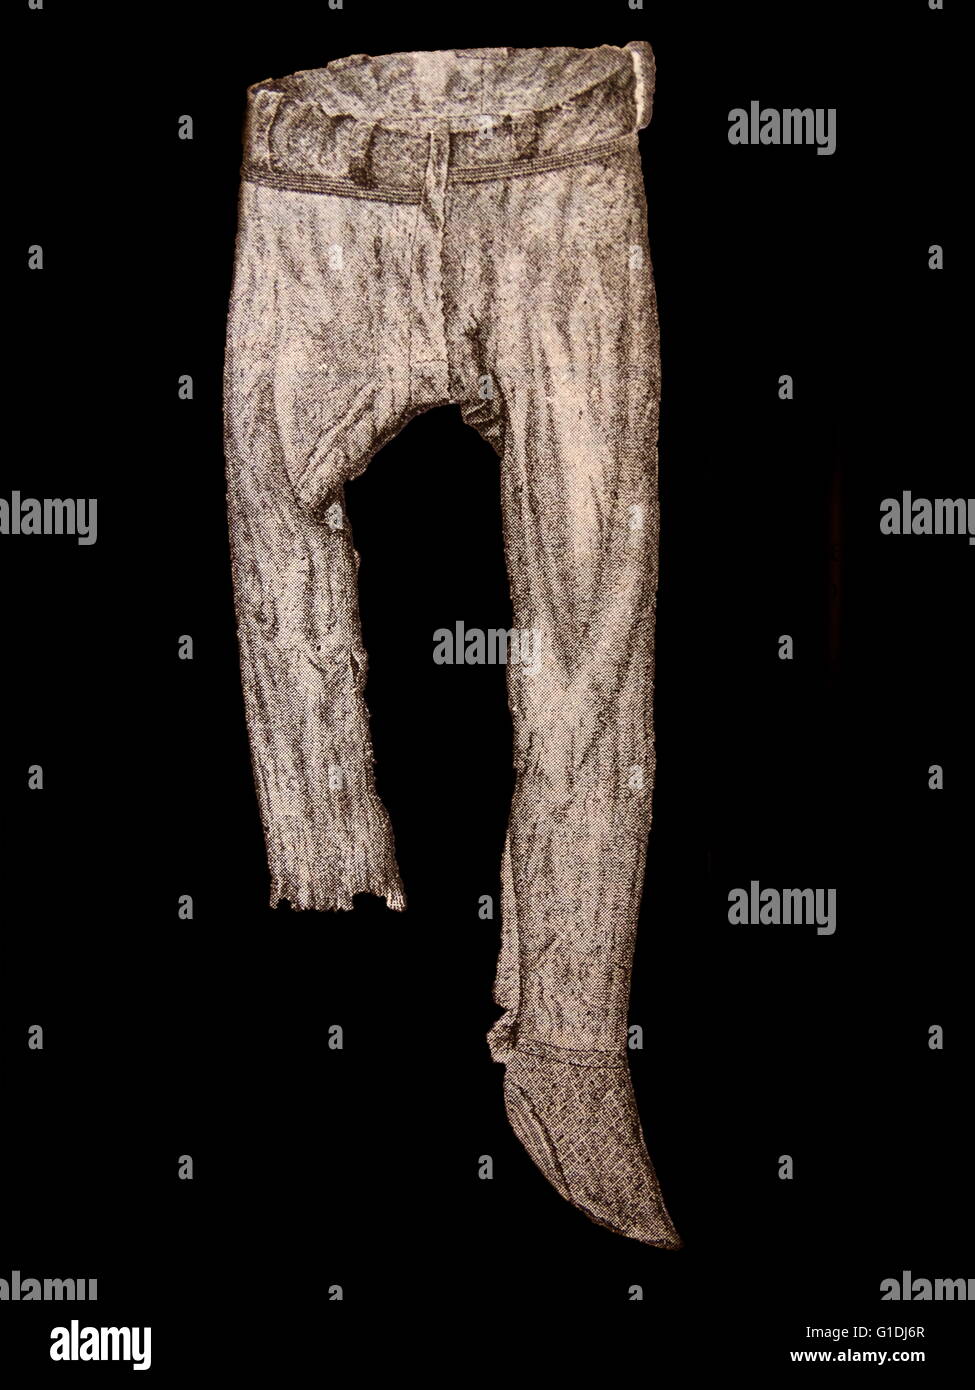 Pantalon Saxon fabriqués à partir de mousse de tourbe. Les Saxons étaient une confédération de tribus germaniques qui se sont installés dans de grandes parties de la Grande-Bretagne au début du Moyen Age 5e siècle AD. Banque D'Images